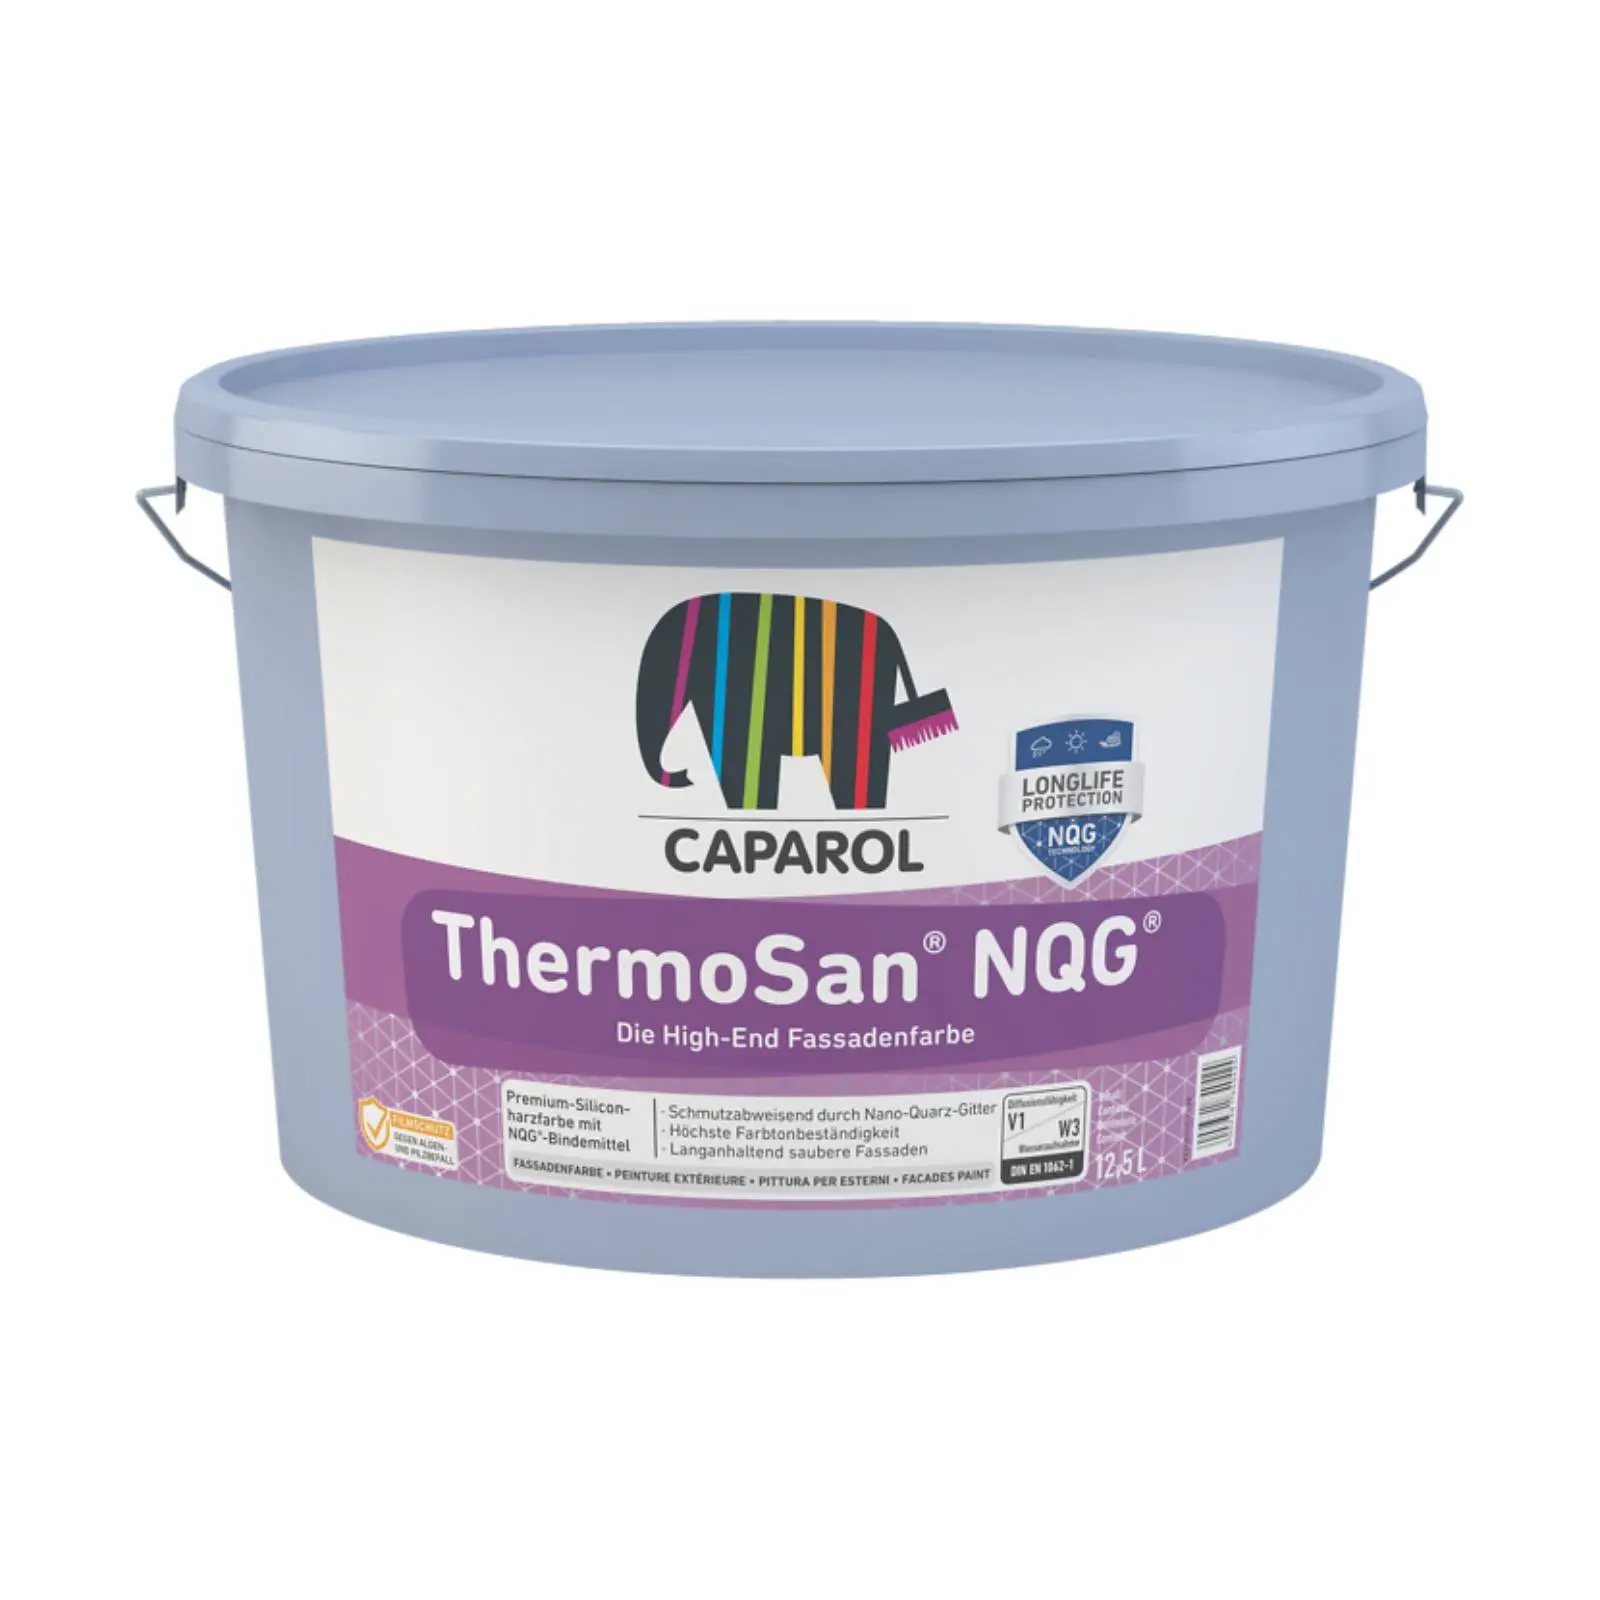 Caparol ThermoSan Fassadenfarbe NQG, weiß, 12,5l